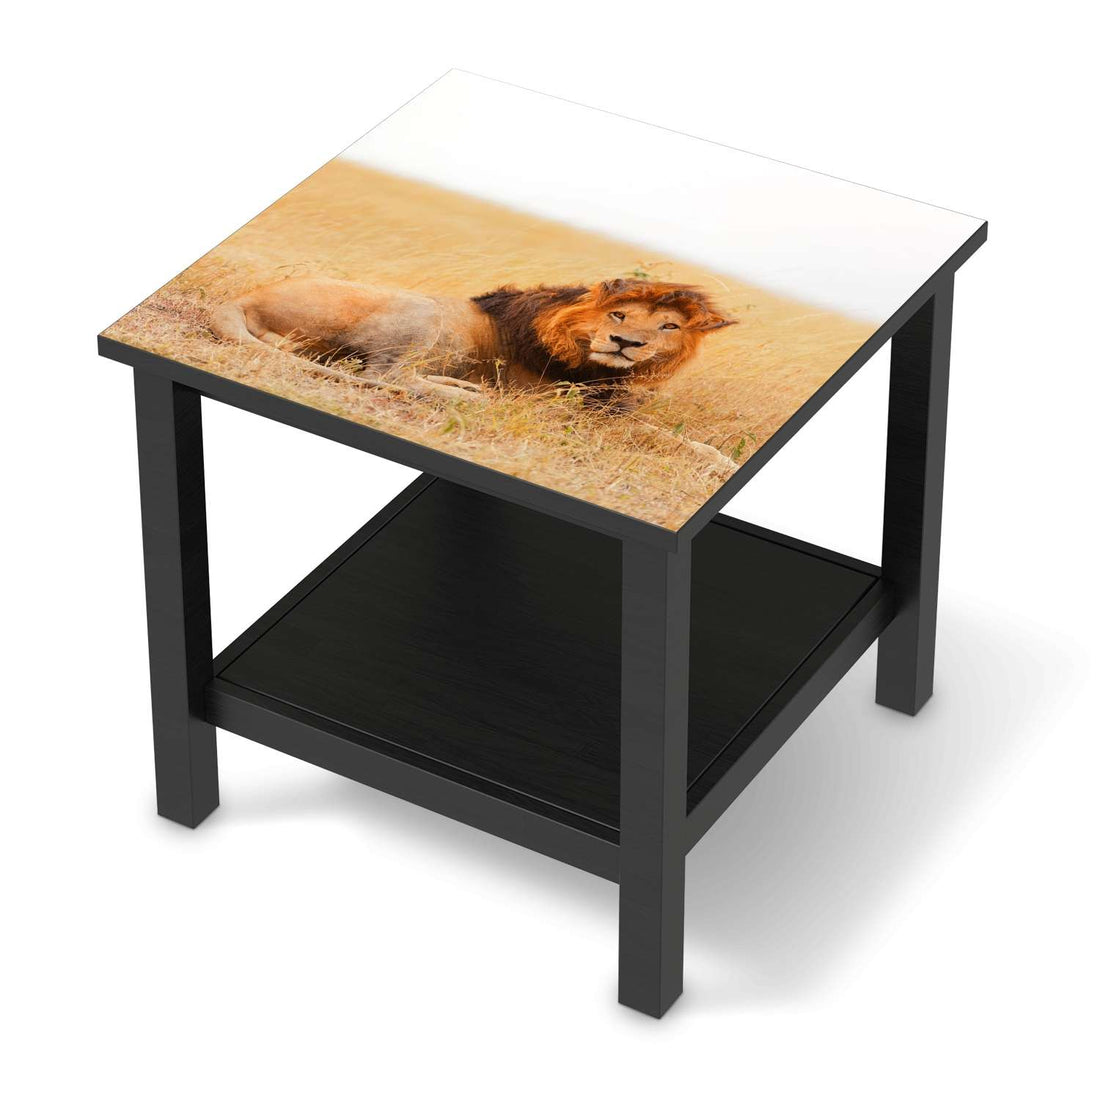 Möbel Klebefolie Lion King - IKEA Hemnes Beistelltisch 55x55 cm - schwarz